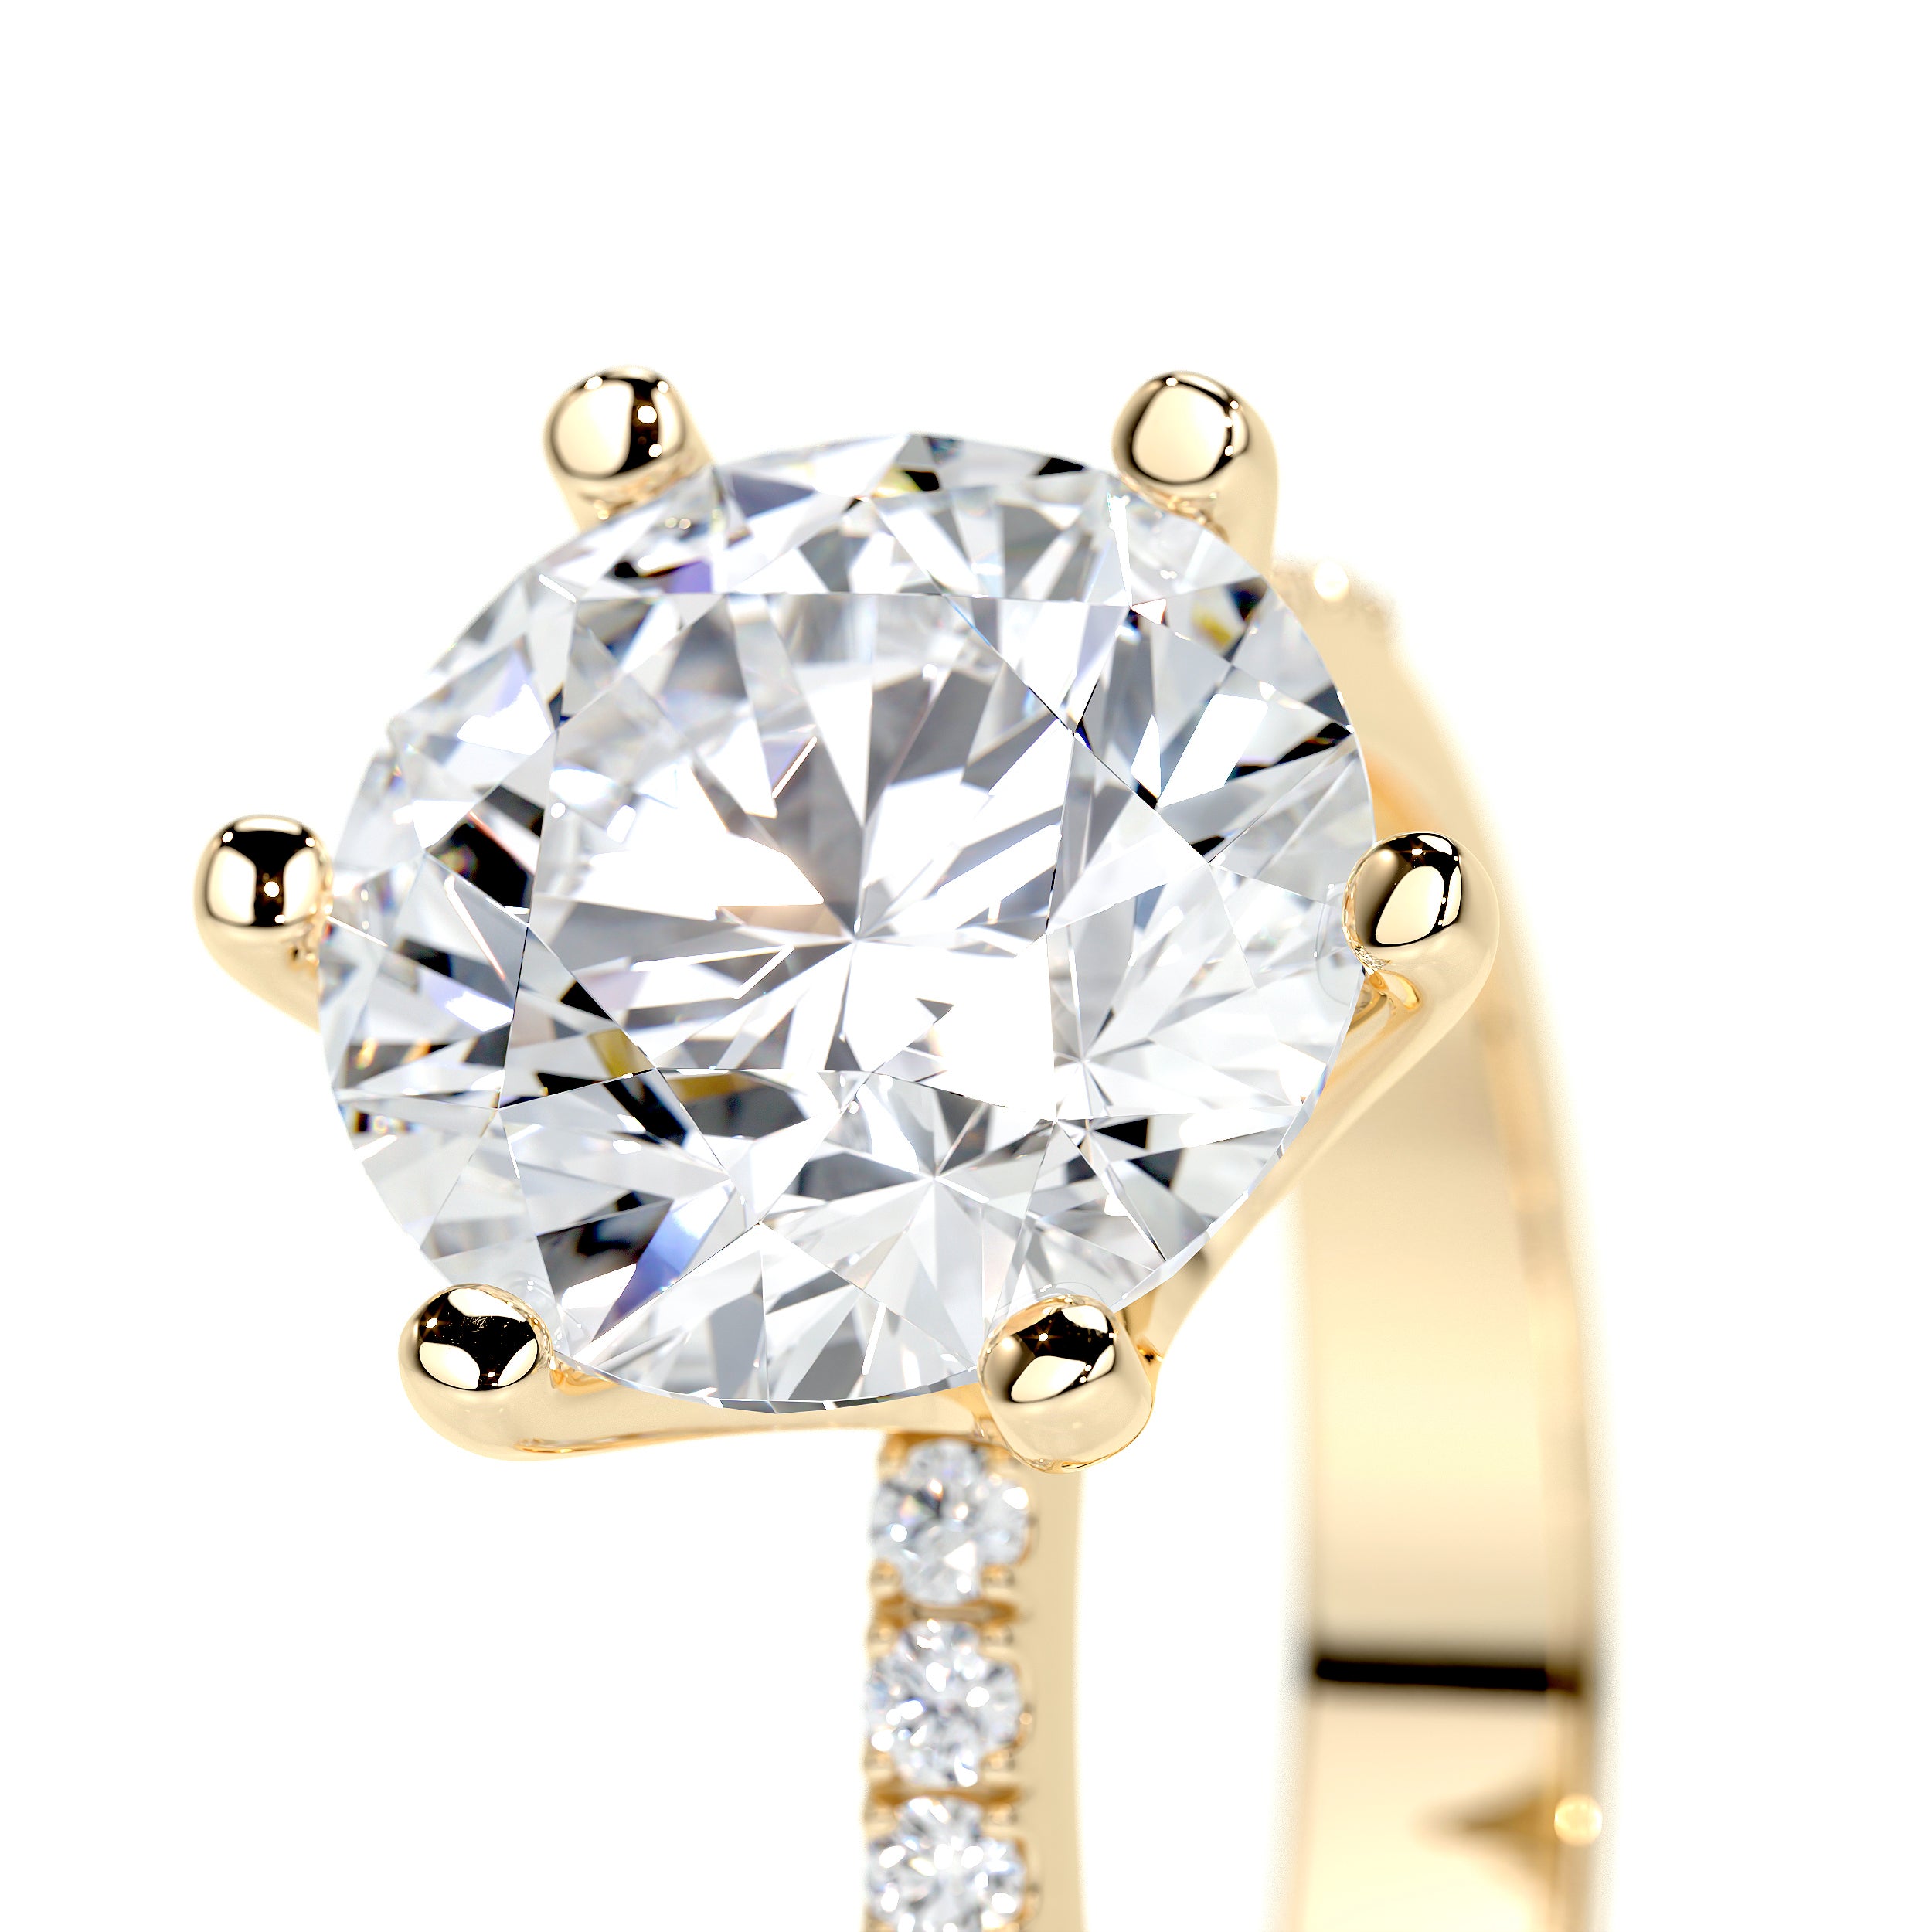 Samantha Lab Grown Diamond Ring   (3.15 Carat) -18K Yellow Gold